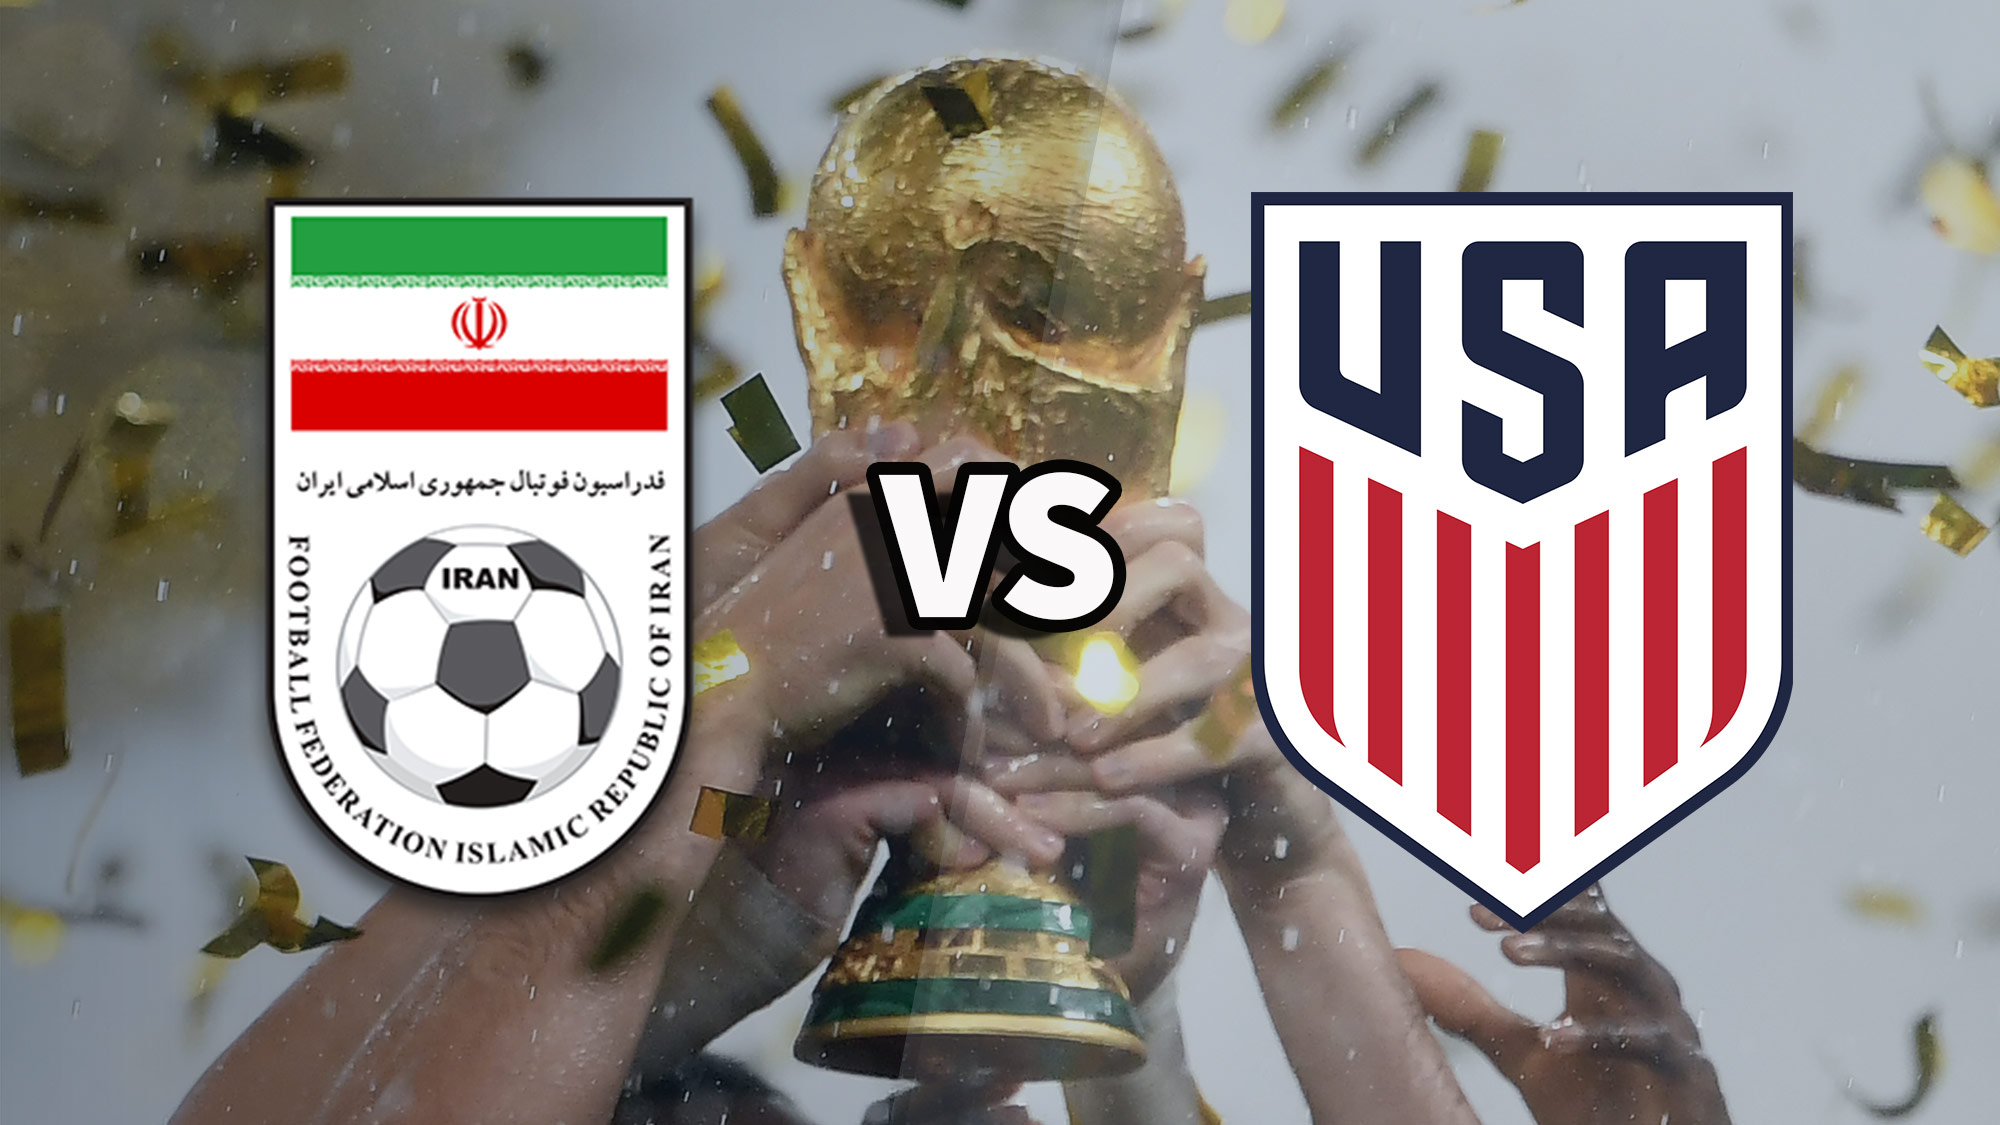 Значки сборной Ирана и США по футболу поверх фотографии поднятого трофея чемпионата мира